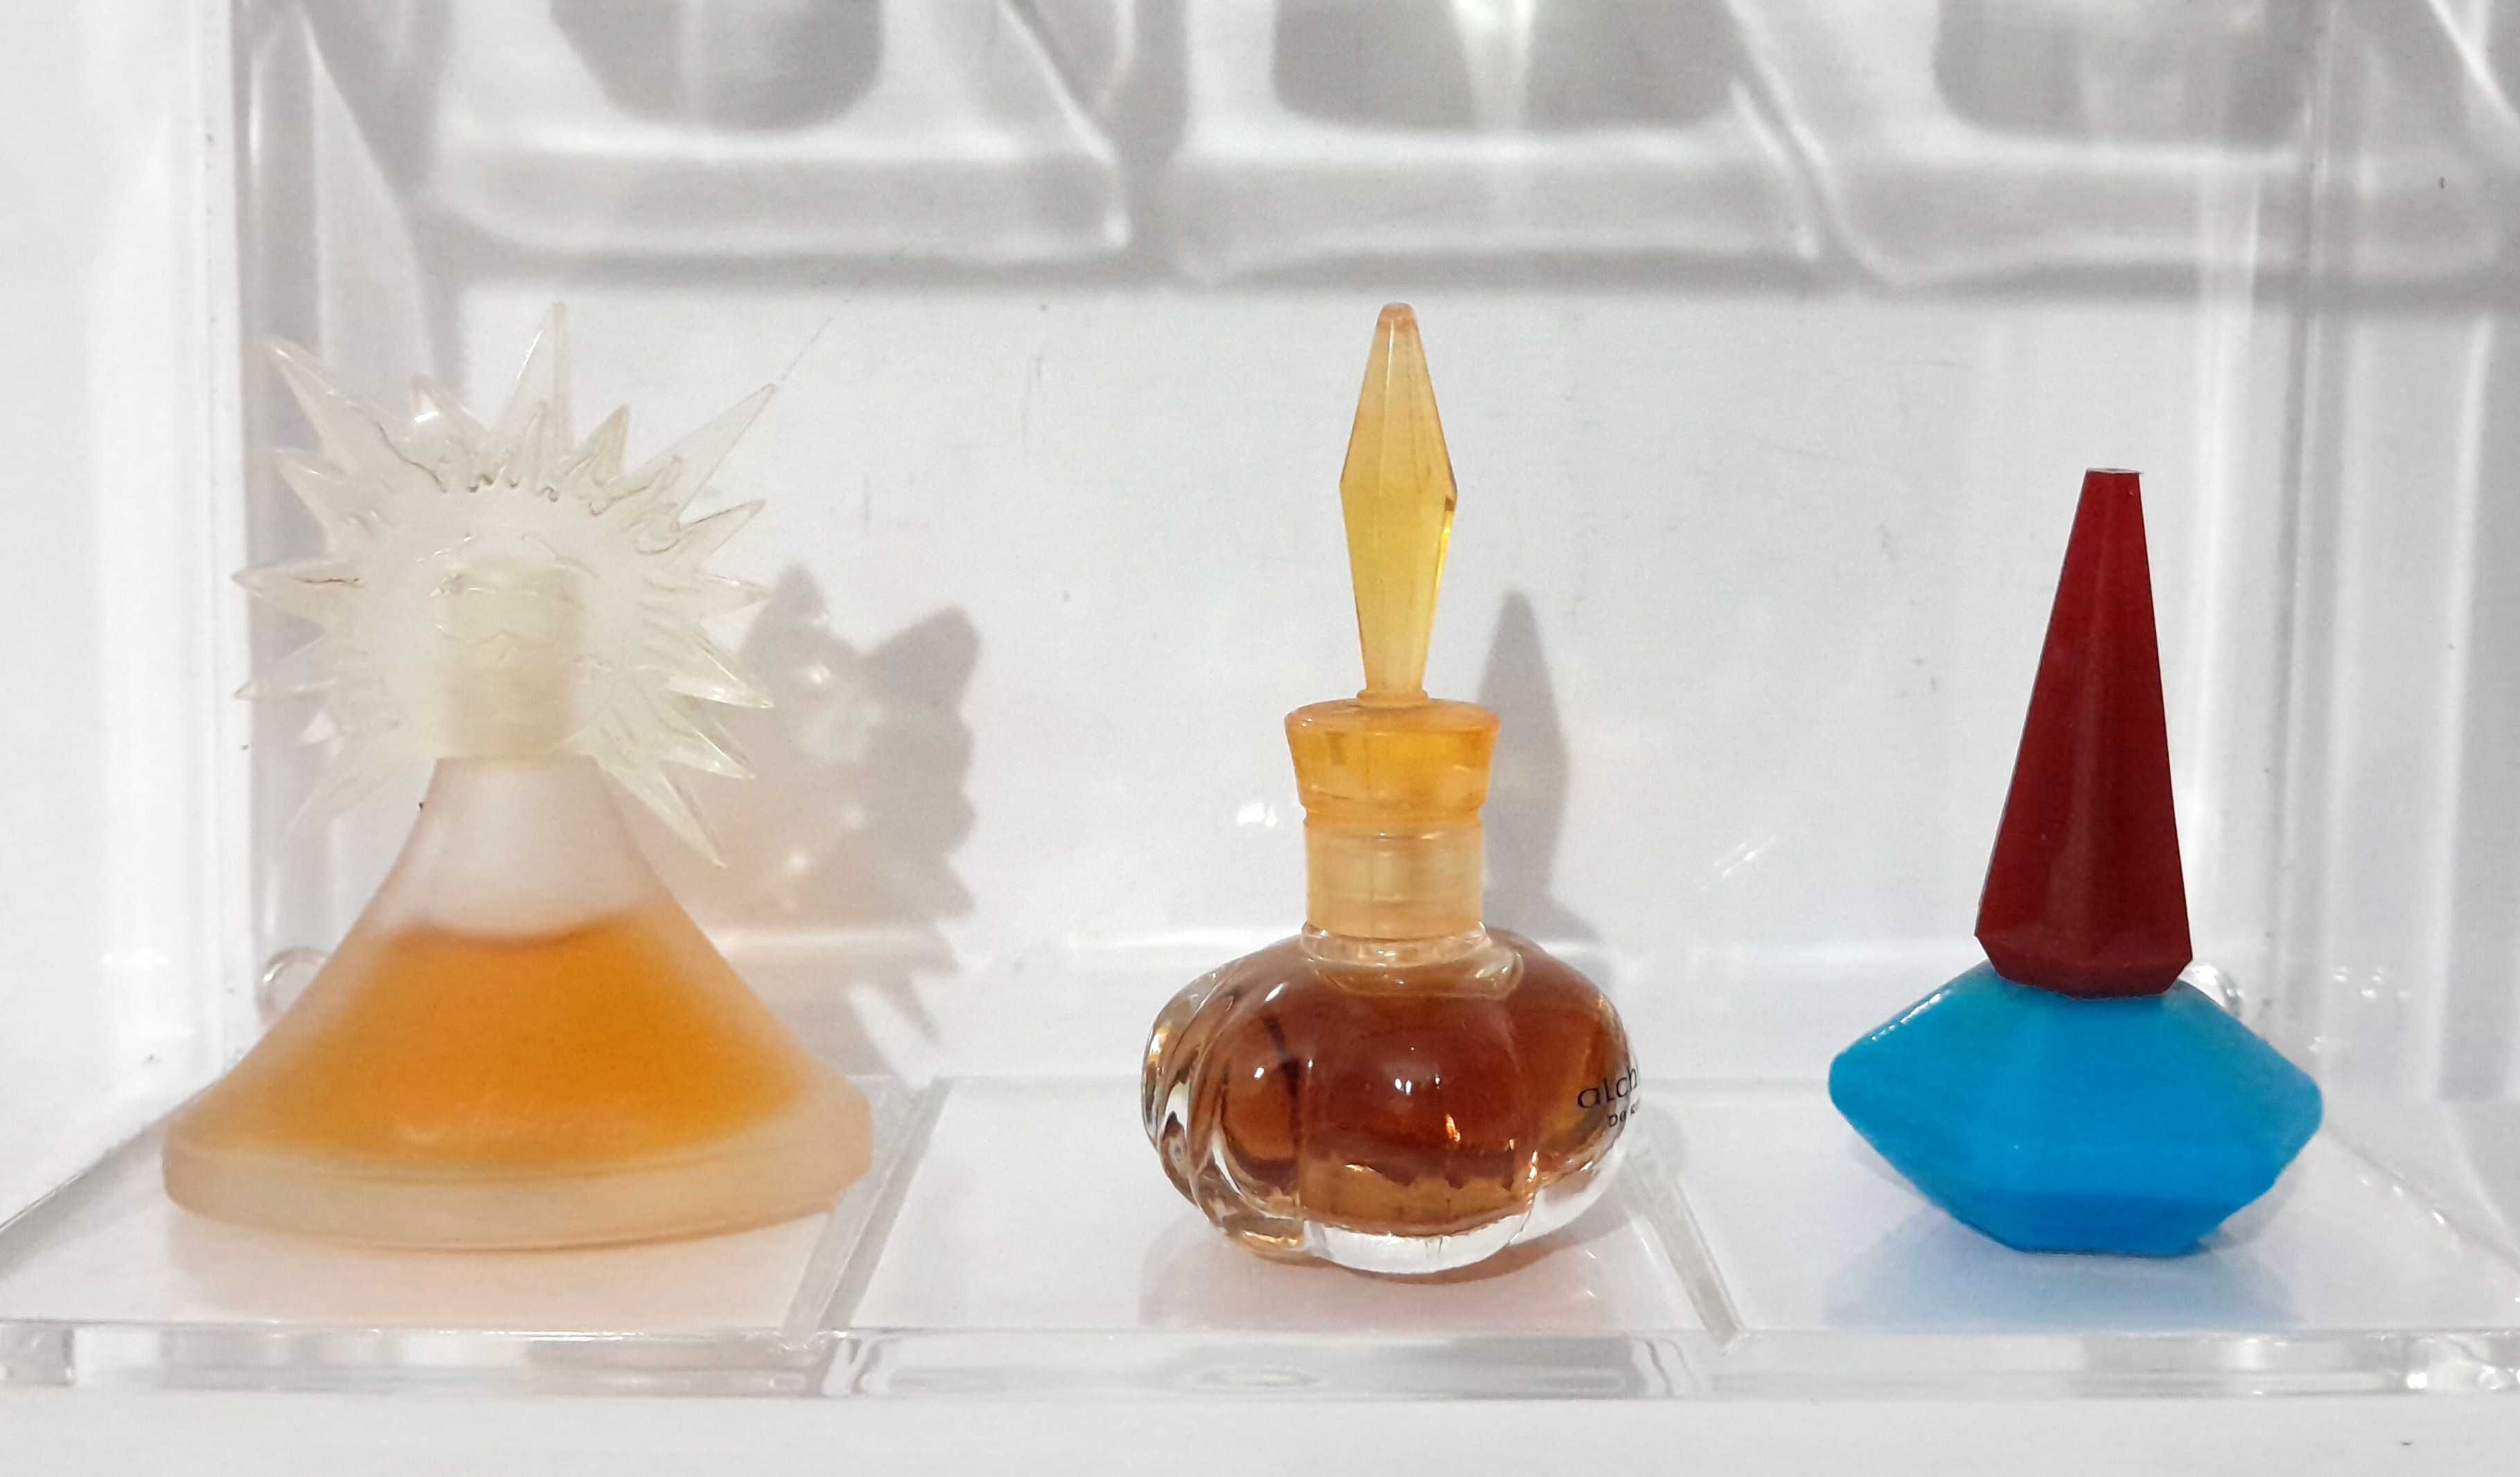 Colecção de Perfumes miniatura (Originais) - Set 3 (Actualizado)